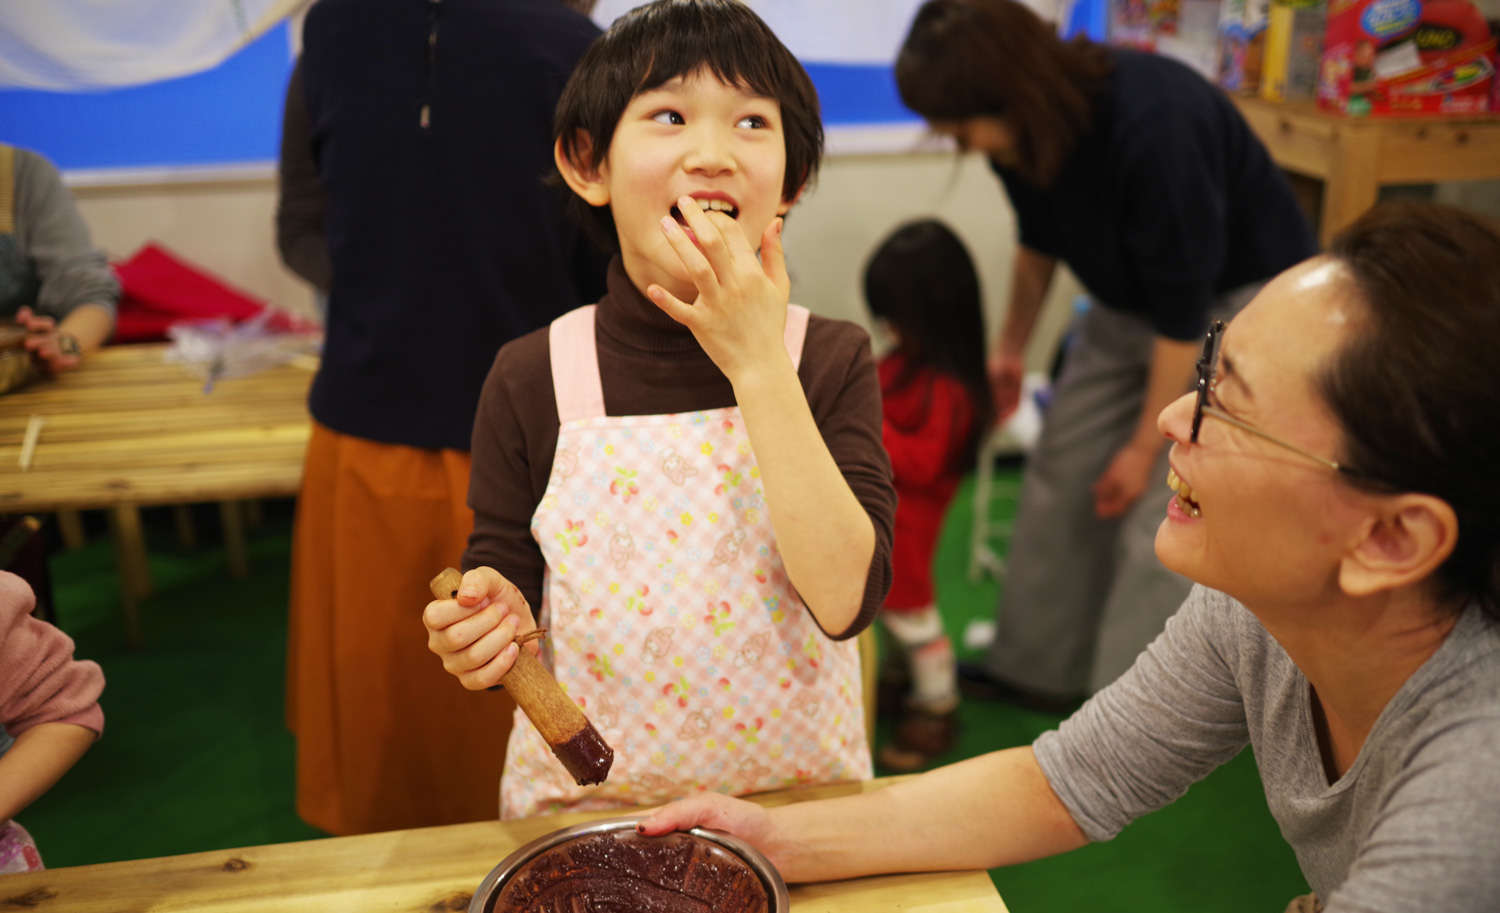 【第5回】カカオ豆からチョコ作り！子供の可能性を広げる無料教育イベント「グロウキッズプログラム」